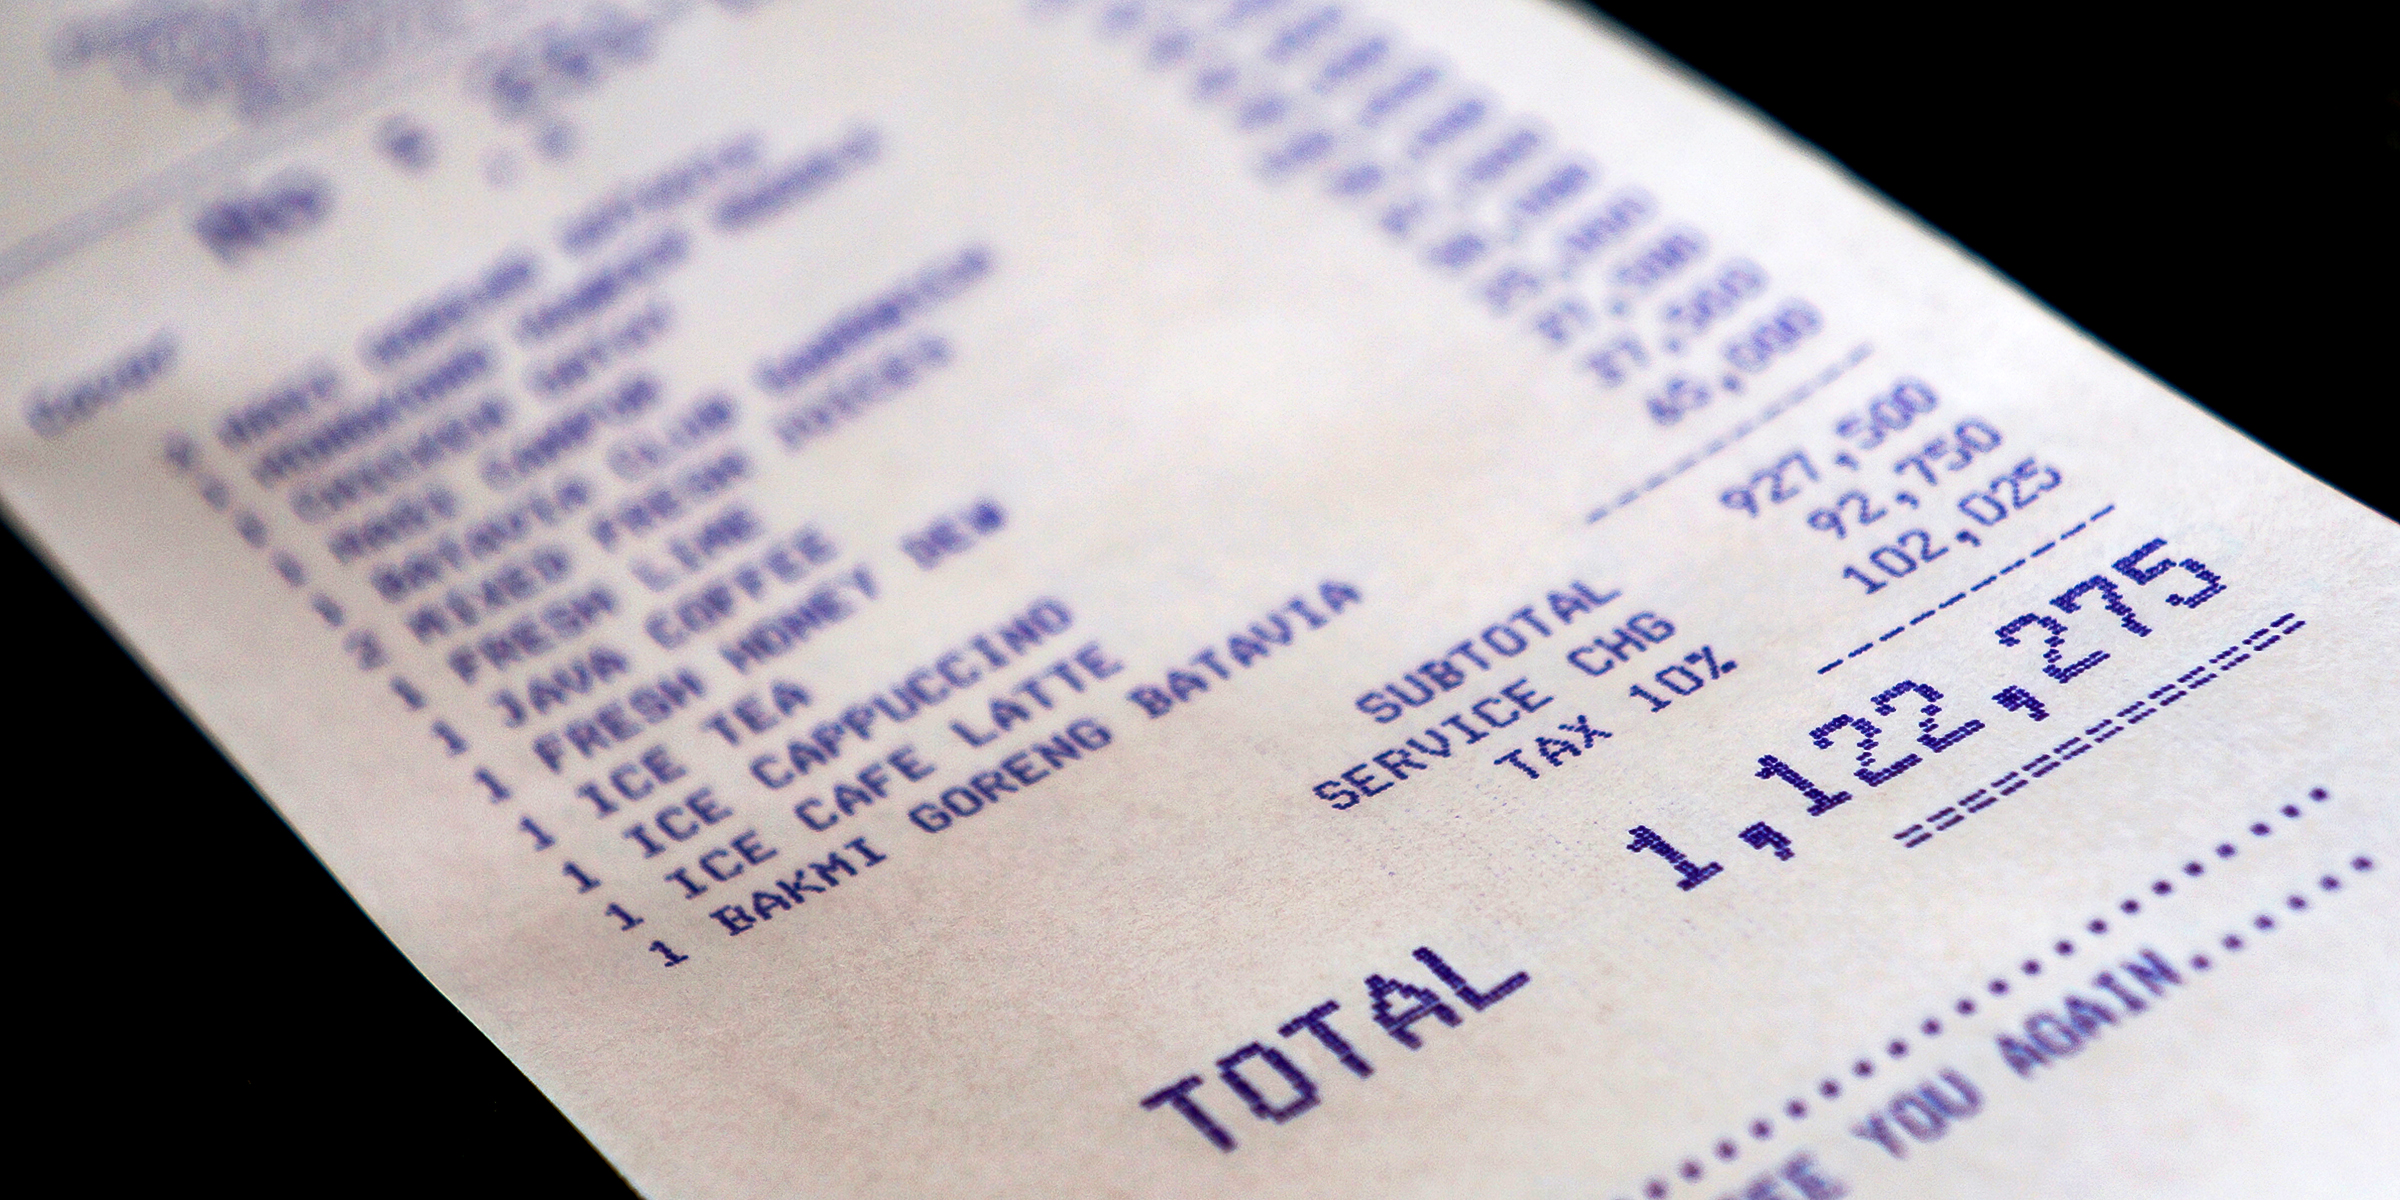 A hefty restaurant bill | Source: Shutterstock